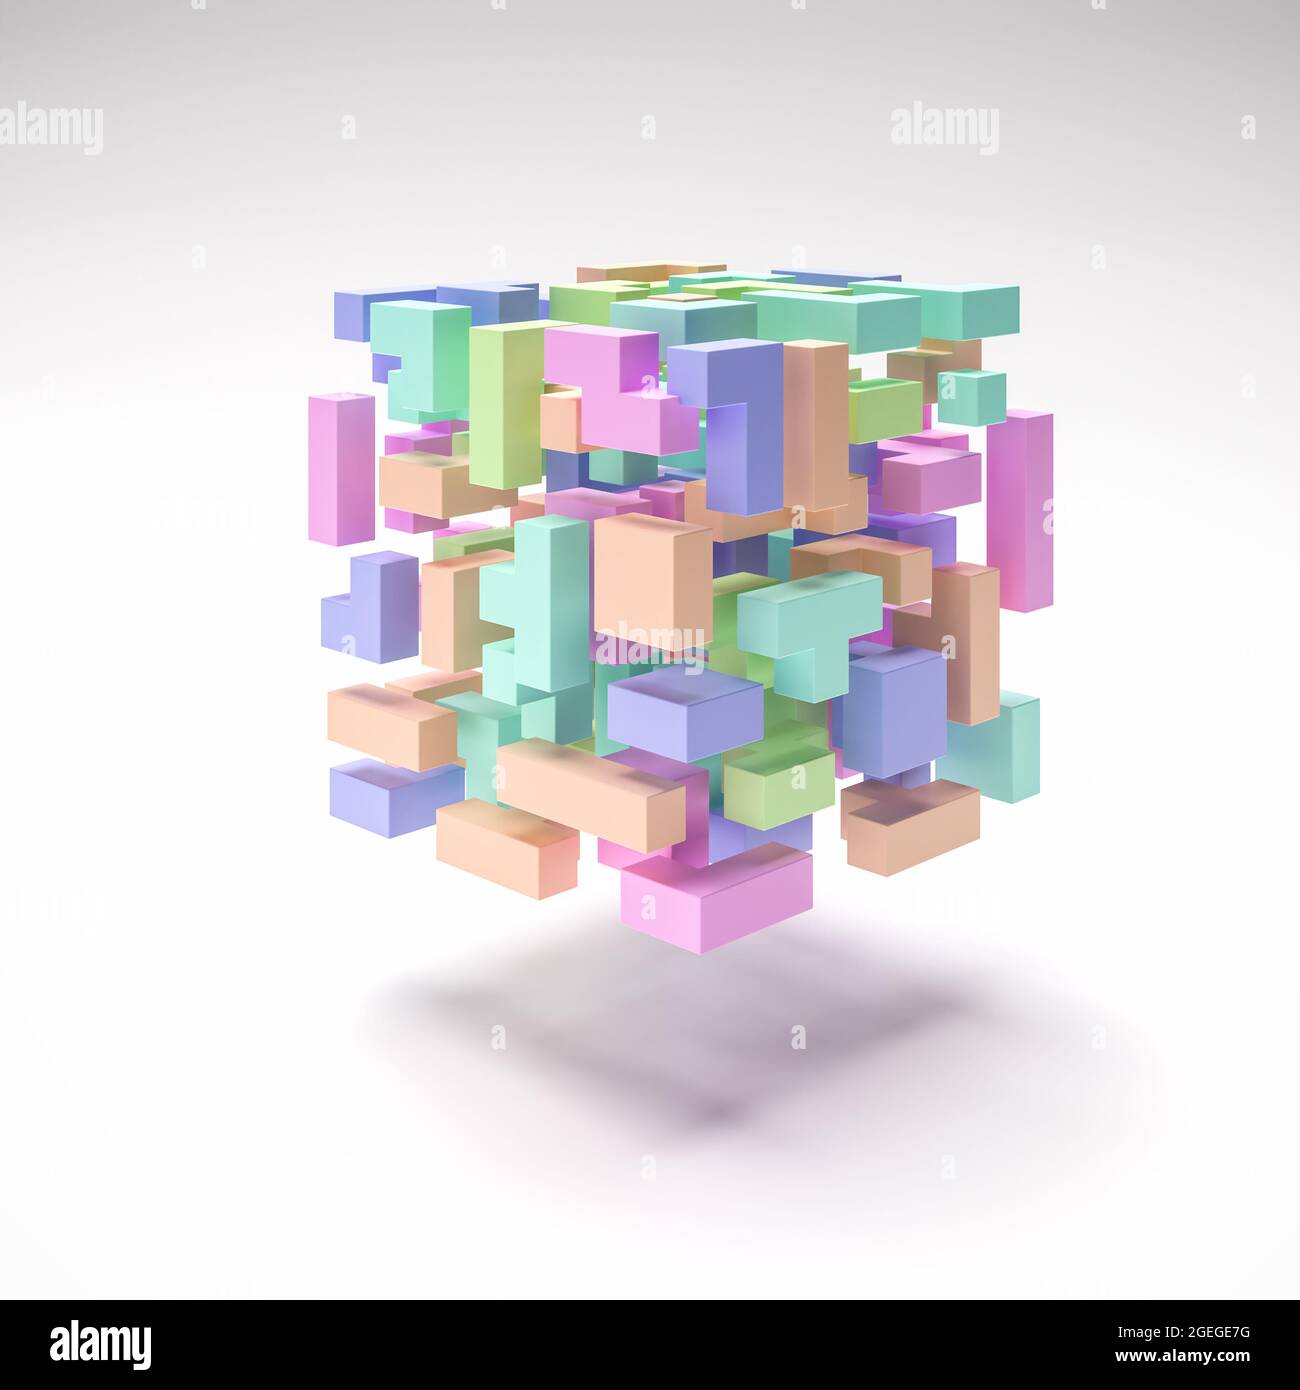 Ein Würfel aus schwebenden Tetris wie Blöcke in verschiedenen Pastellfarben und Formen in einer explodierten Ansicht. Abstrakter Hintergrund. Stockfoto